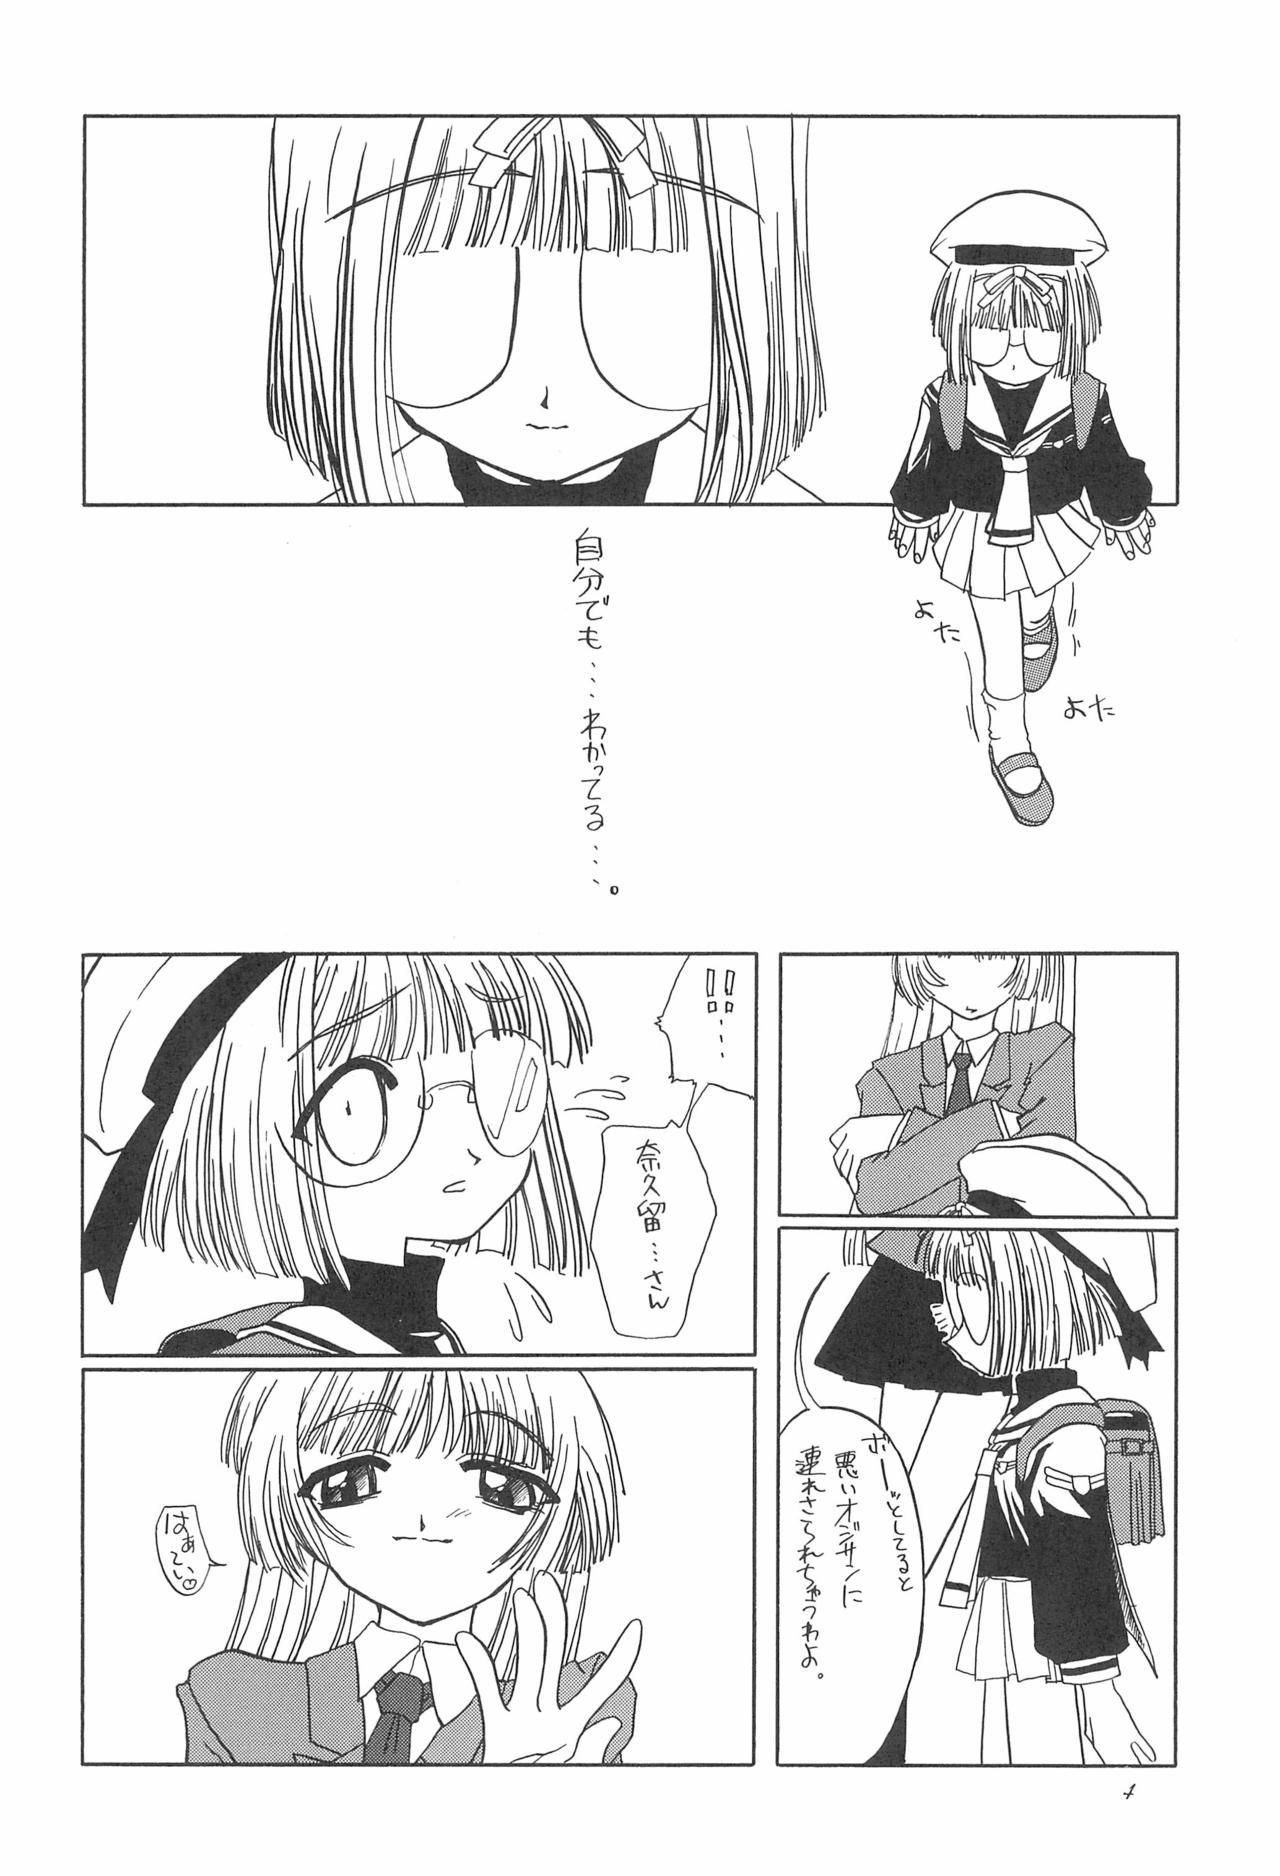 Masturbacion 8th of ace - Cardcaptor sakura Alone - Page 8